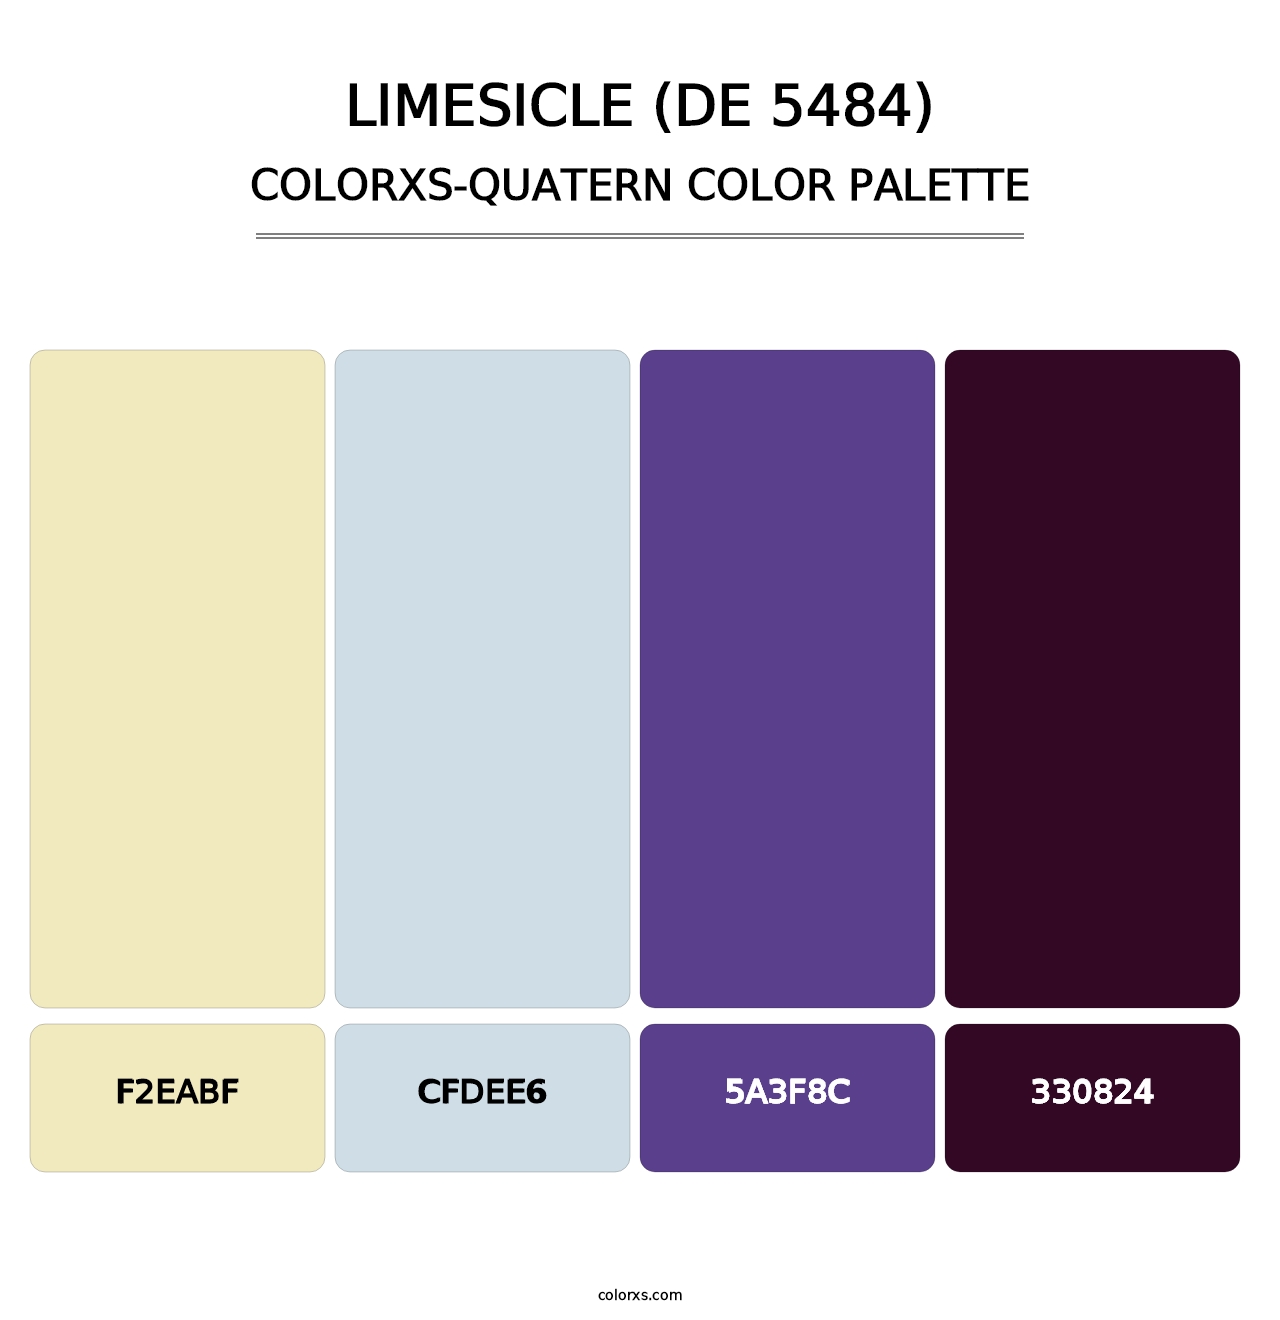 Limesicle (DE 5484) - Colorxs Quatern Palette